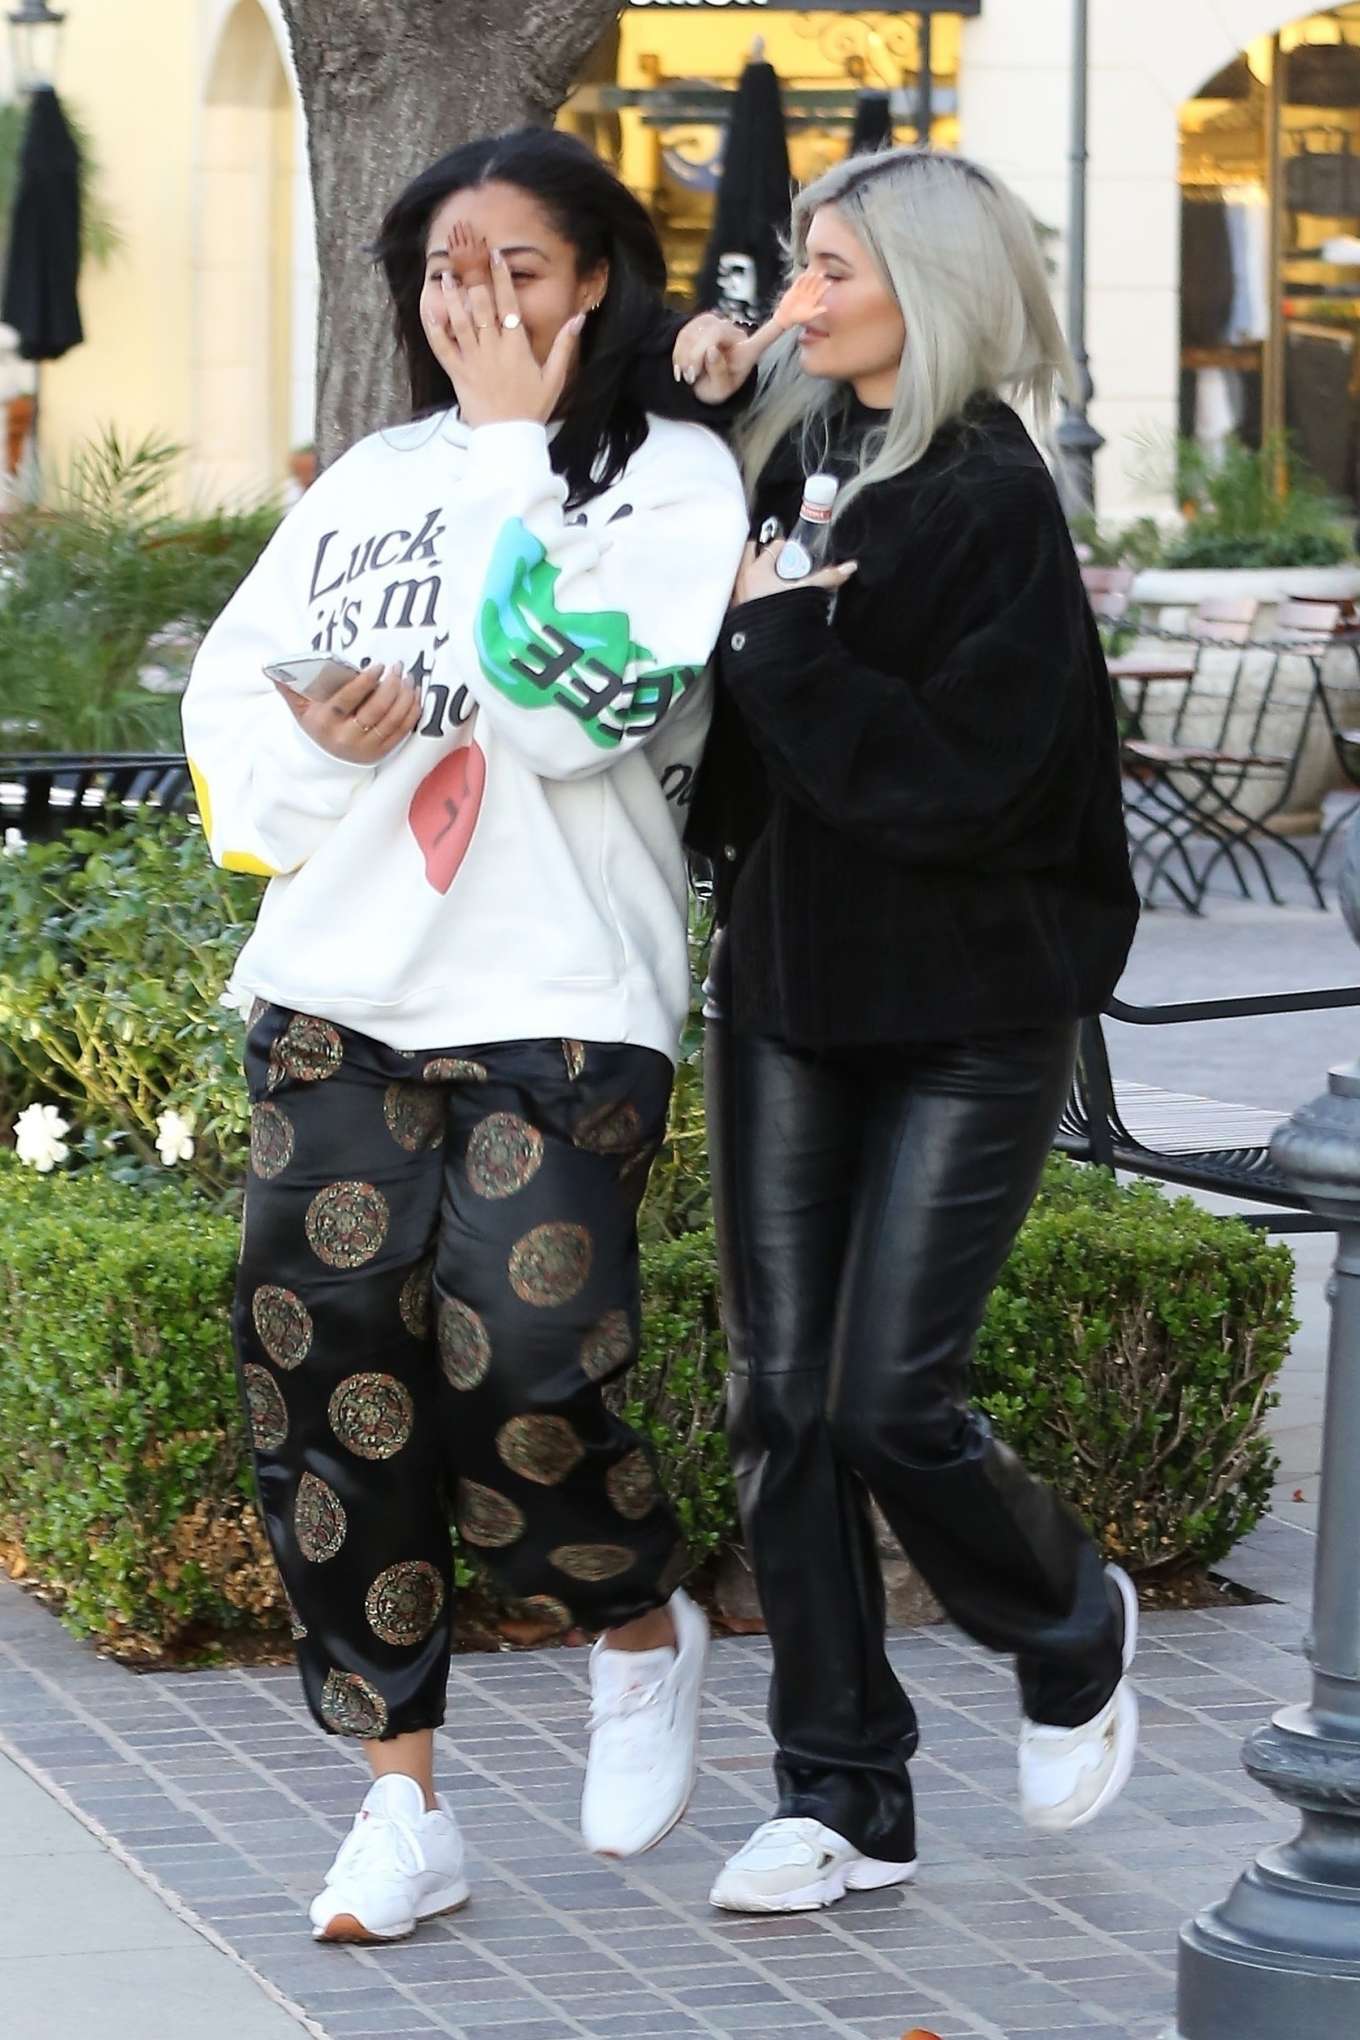 Kylie Jenner and Jordyn Woods â€“ Leaving dinner in Calabasas